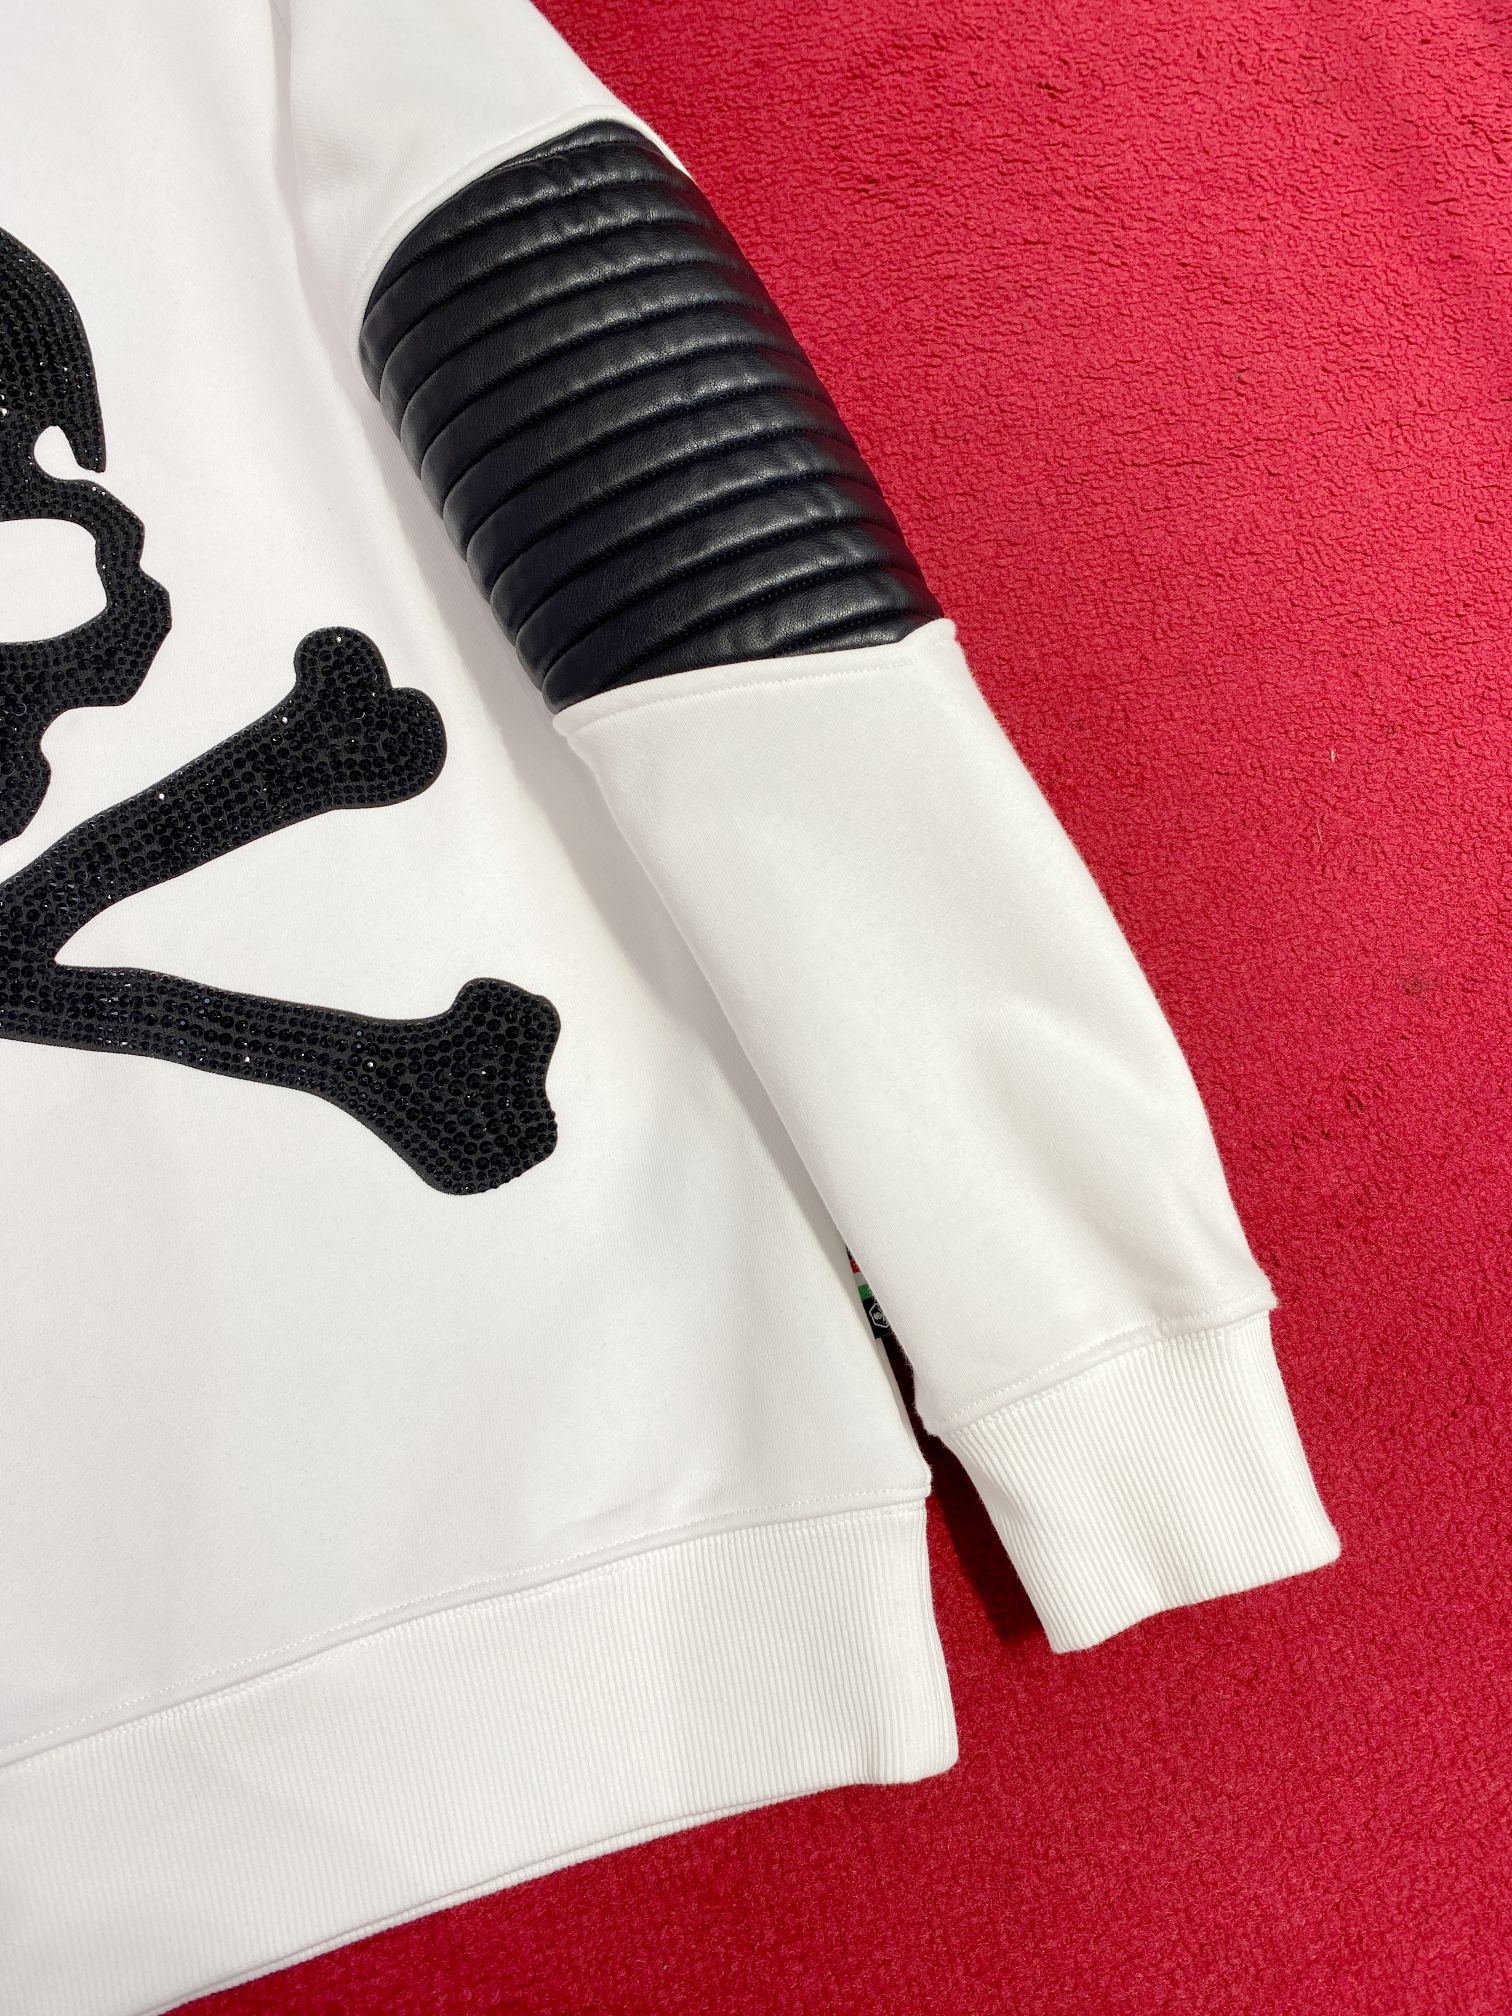 フィリッププレイン t シャツｎ級品 トップスシャツ長袖 ゆったりドクロプリントホワイト_6